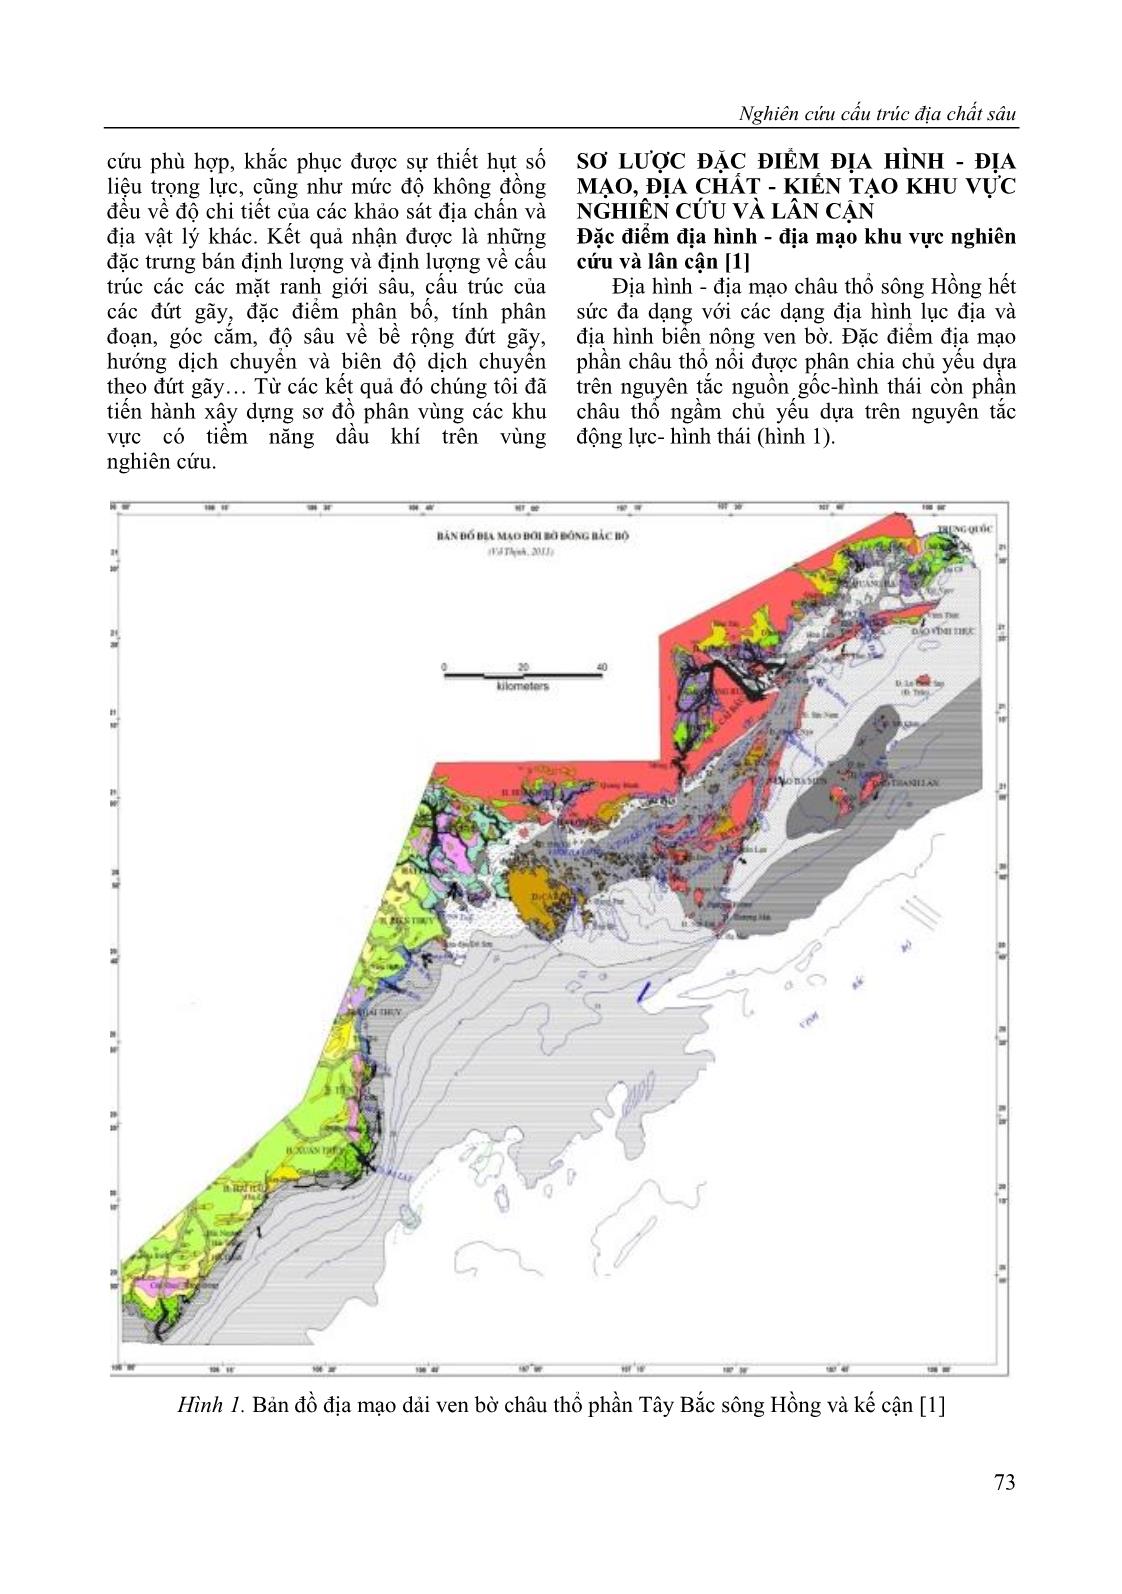 Nghiên cứu cấu trúc địa chất sâu và dự báo một số khu vực có triển vọng dầu khí thuộc dải ven biển châu thổ sông Hồng theo tài liệu địa vật lý trang 3